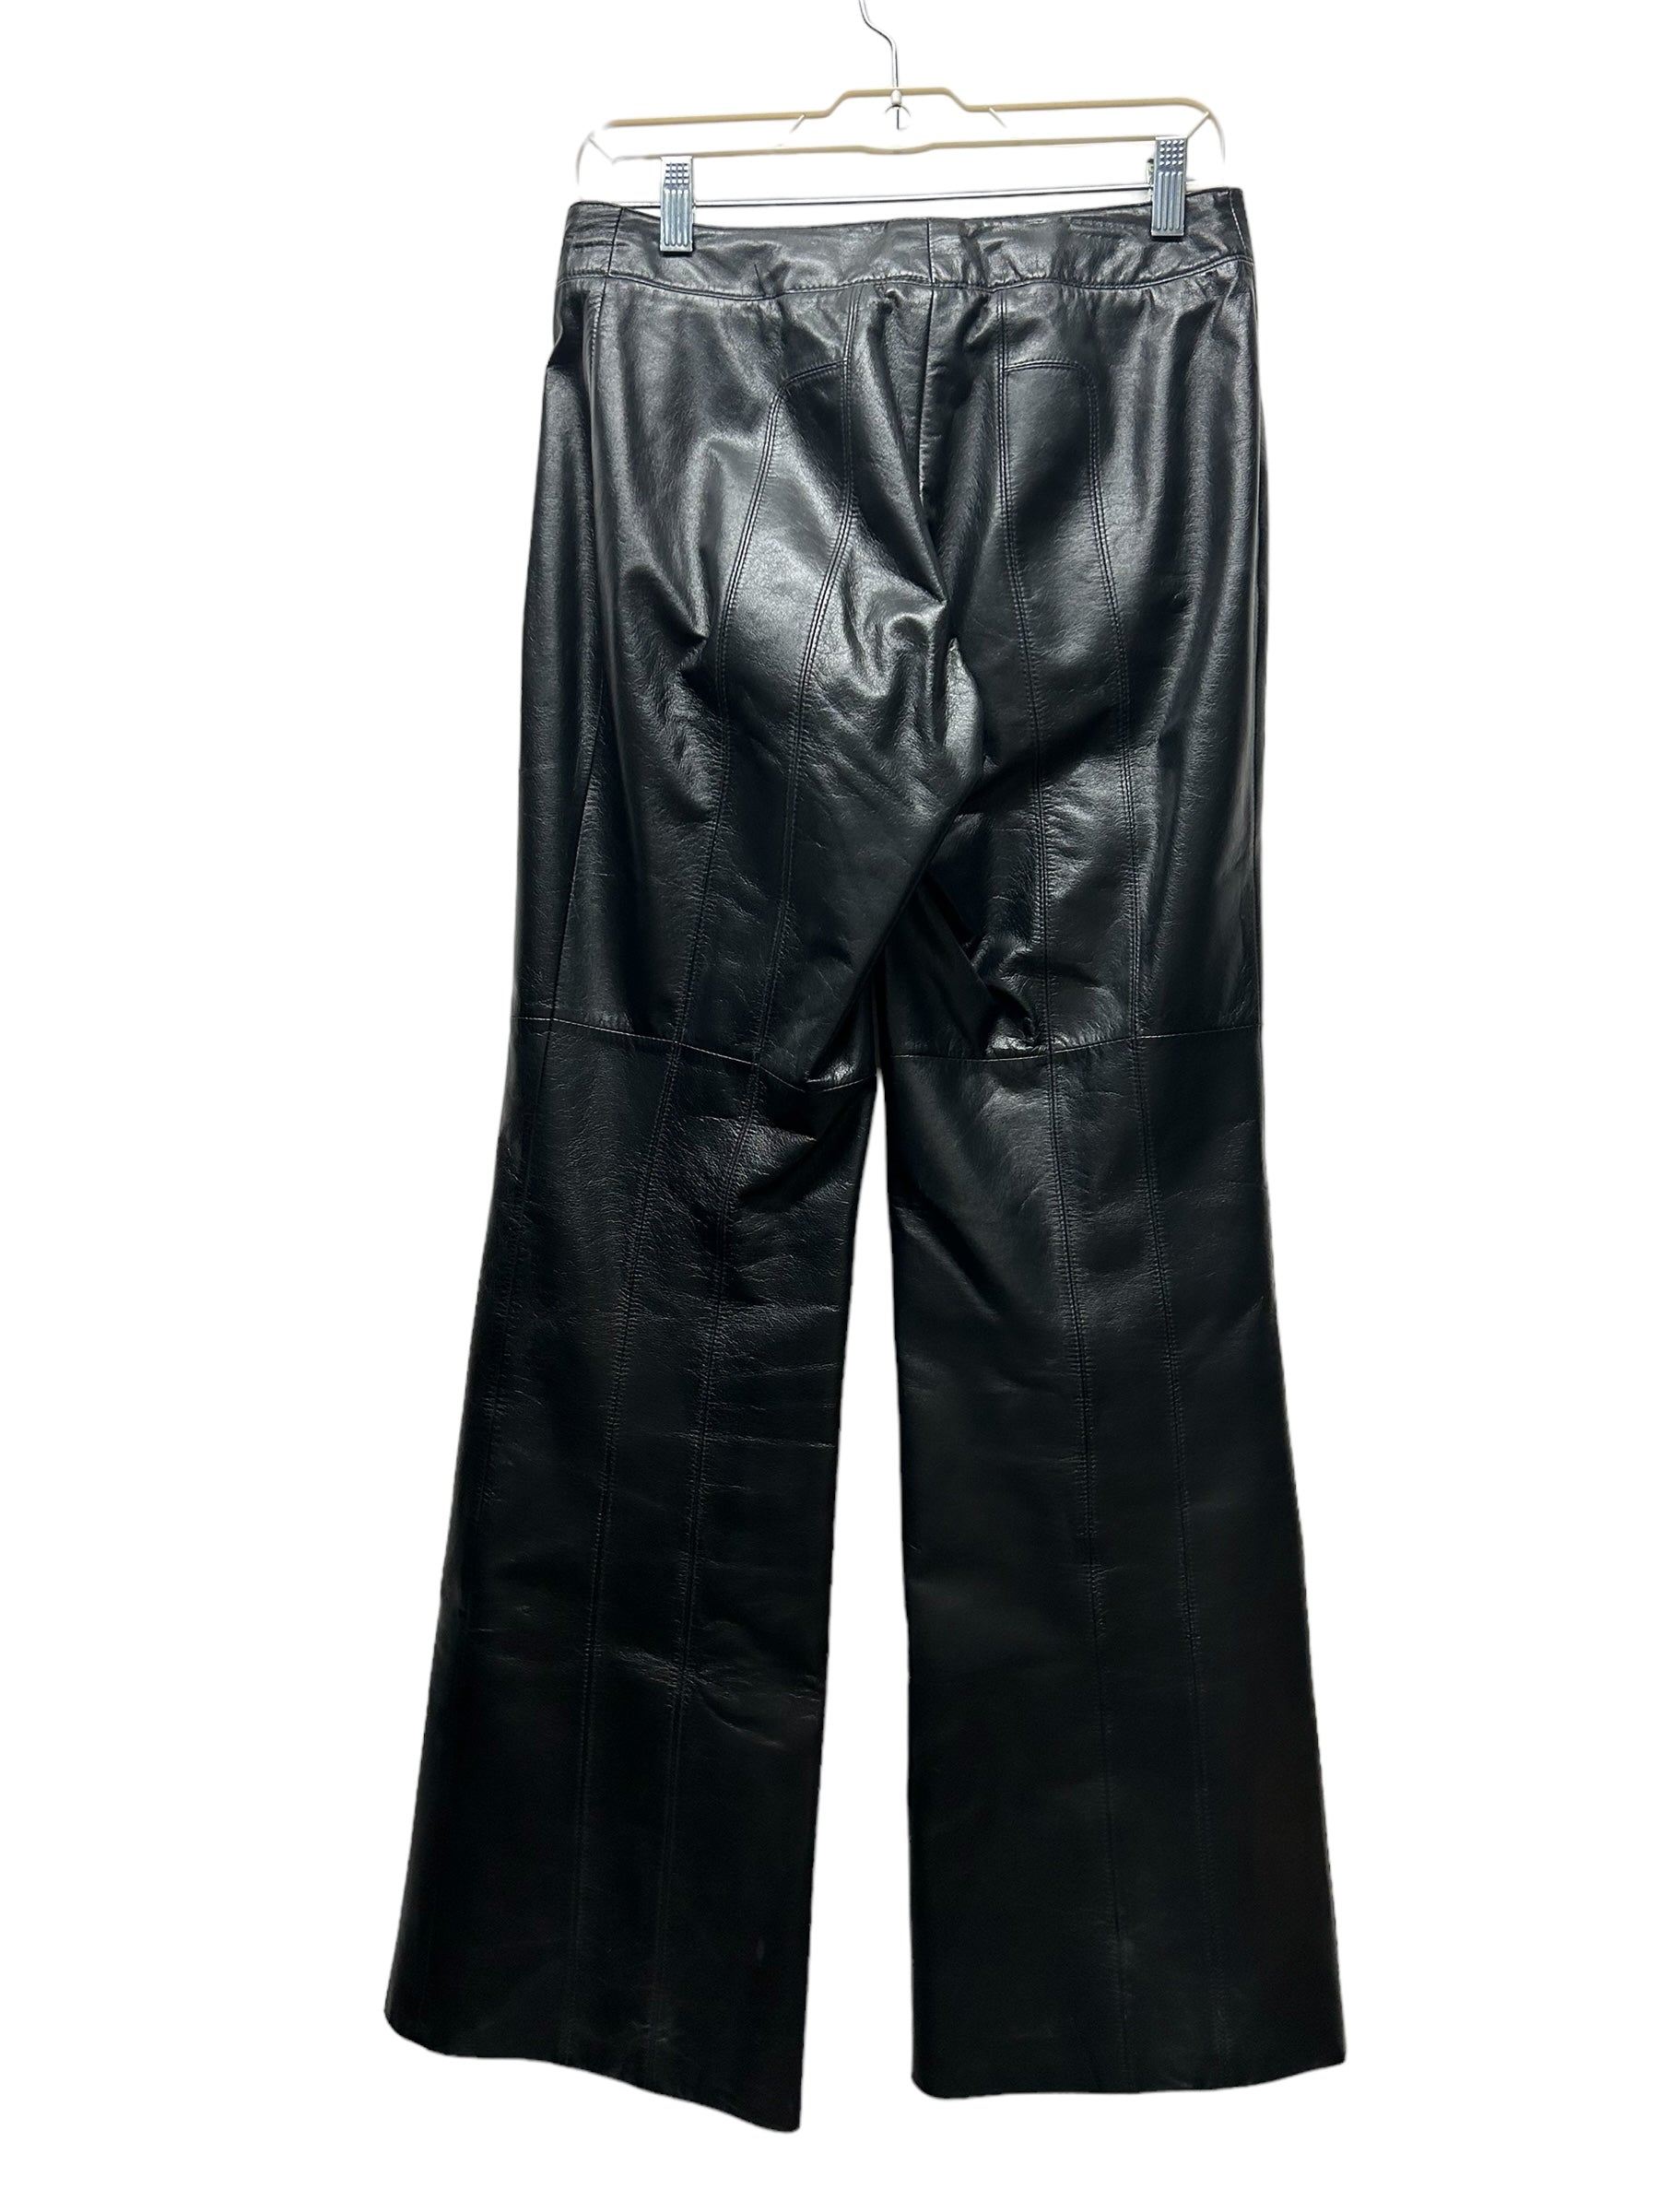 Danier Leather Pants (28-30)